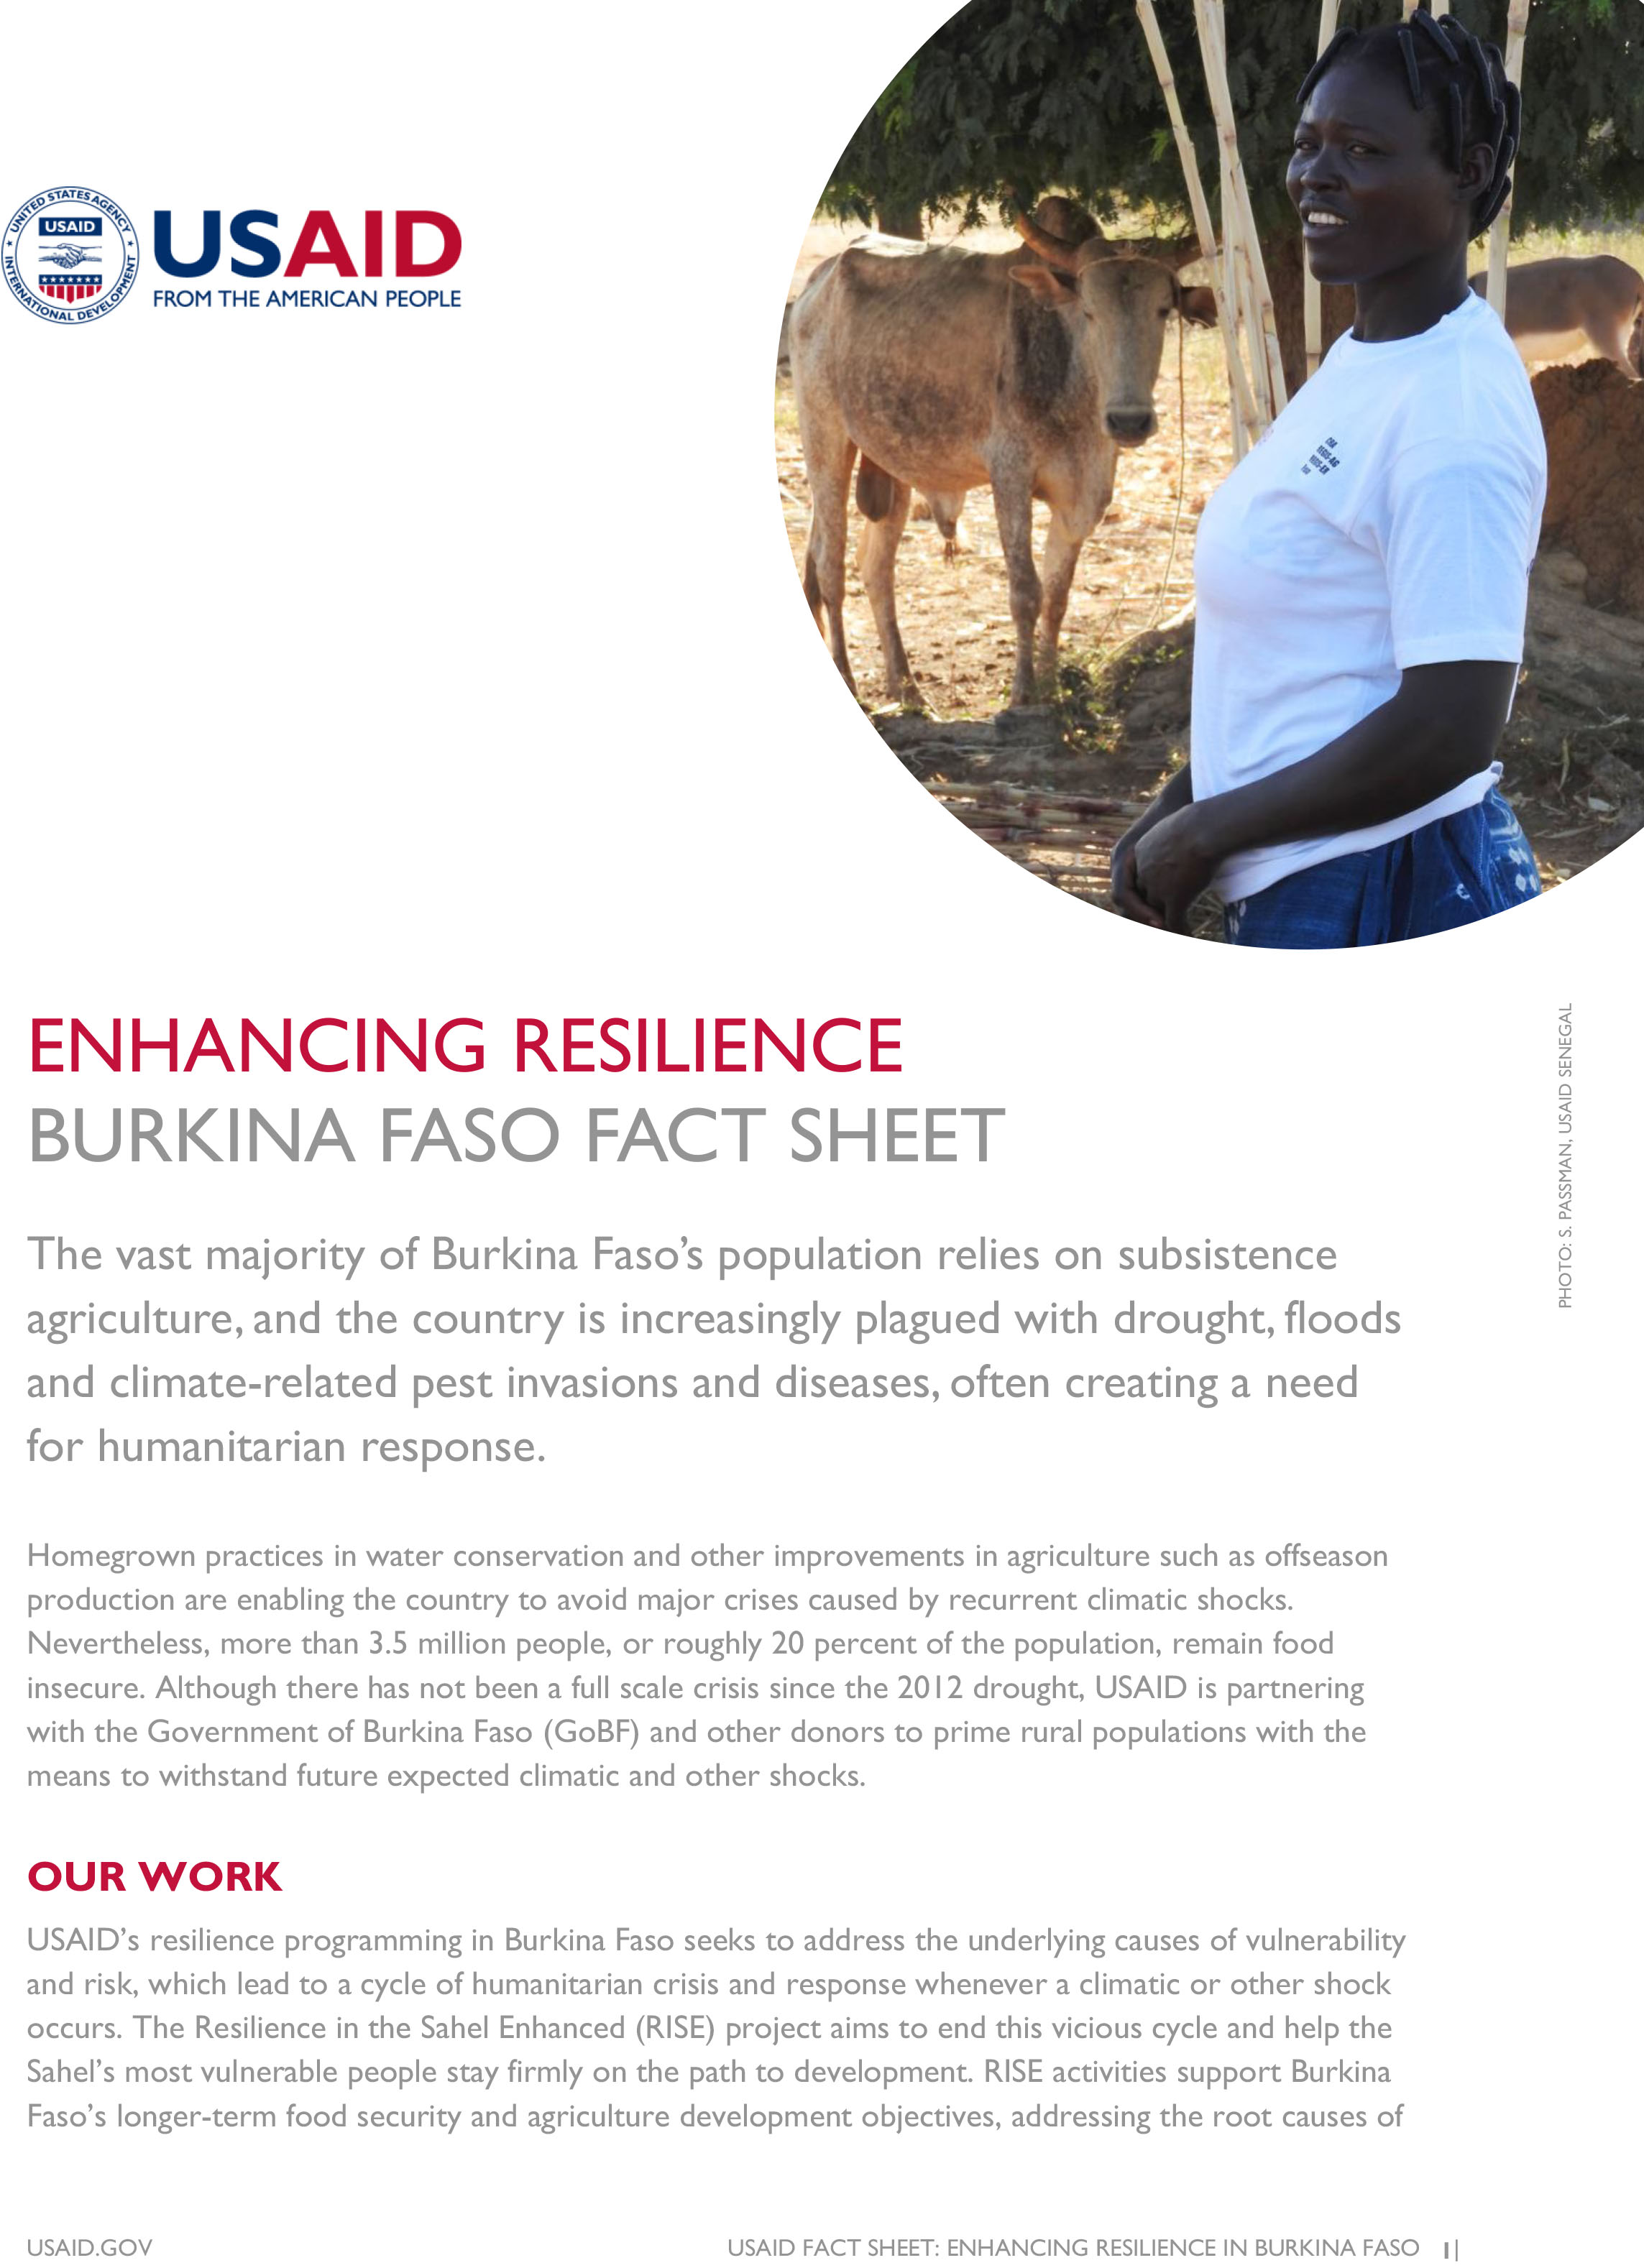 Burkina Faso Fact Sheet-Enhancing Resilience